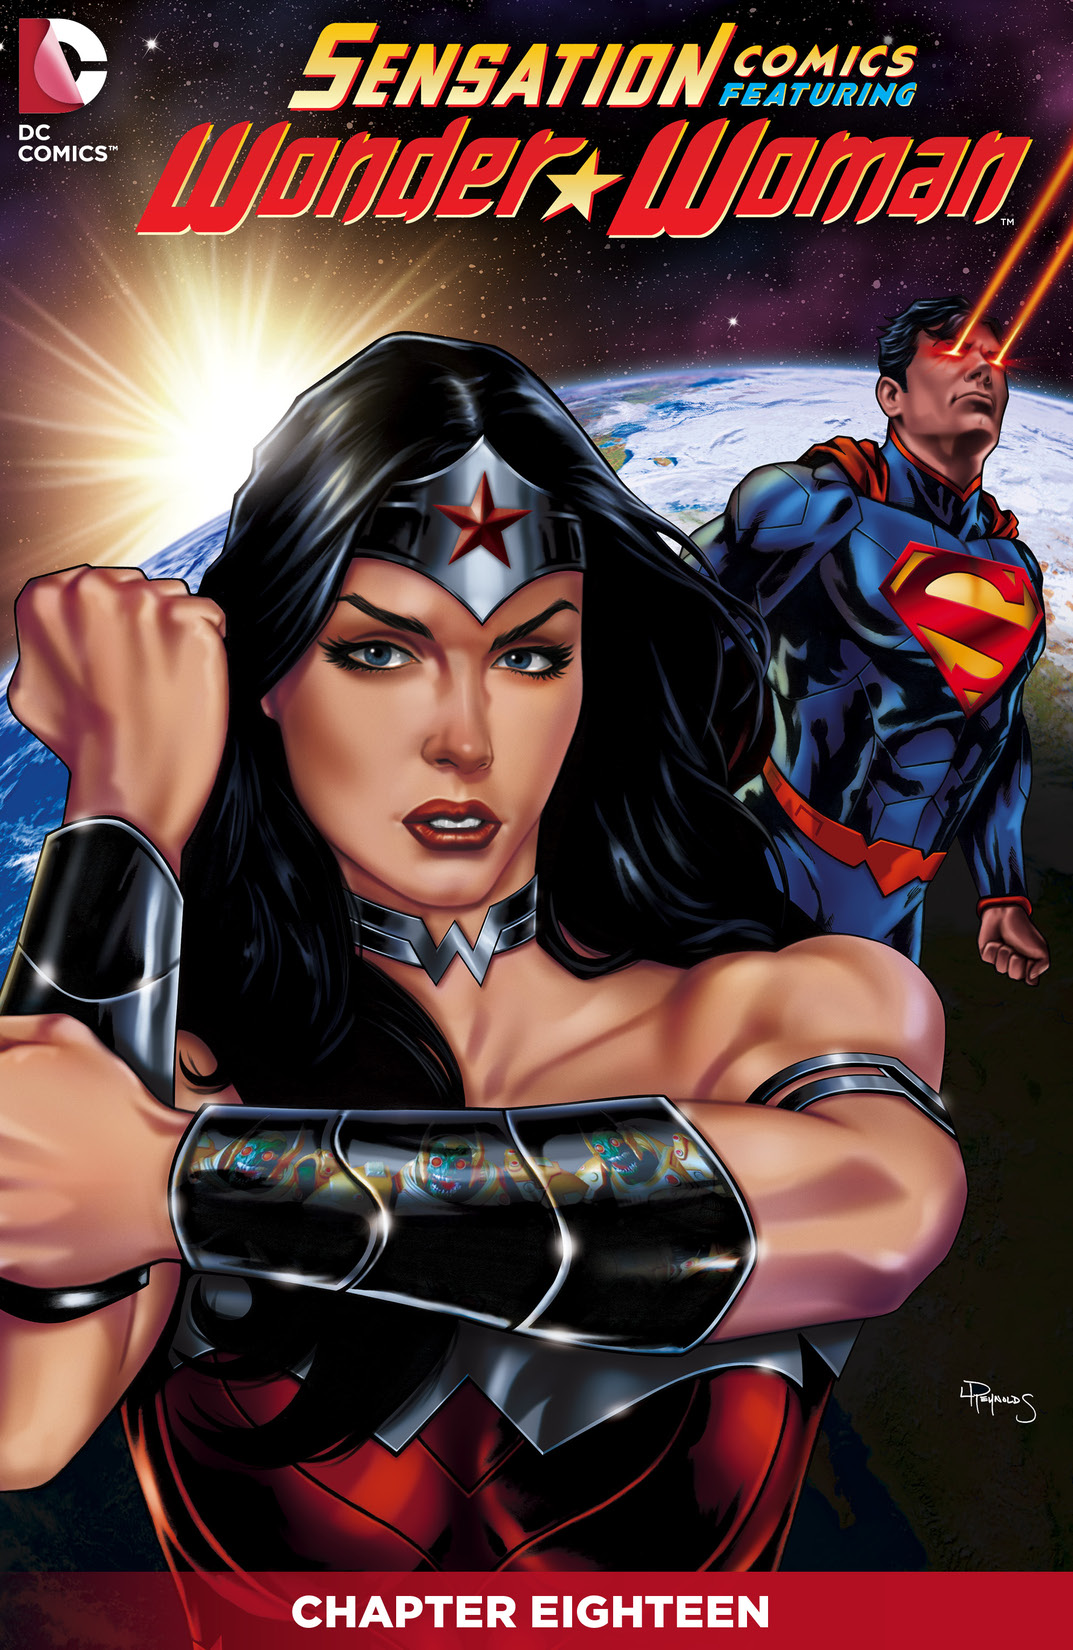 Sensation Comics Featuring Wonder Woman #18 preview images